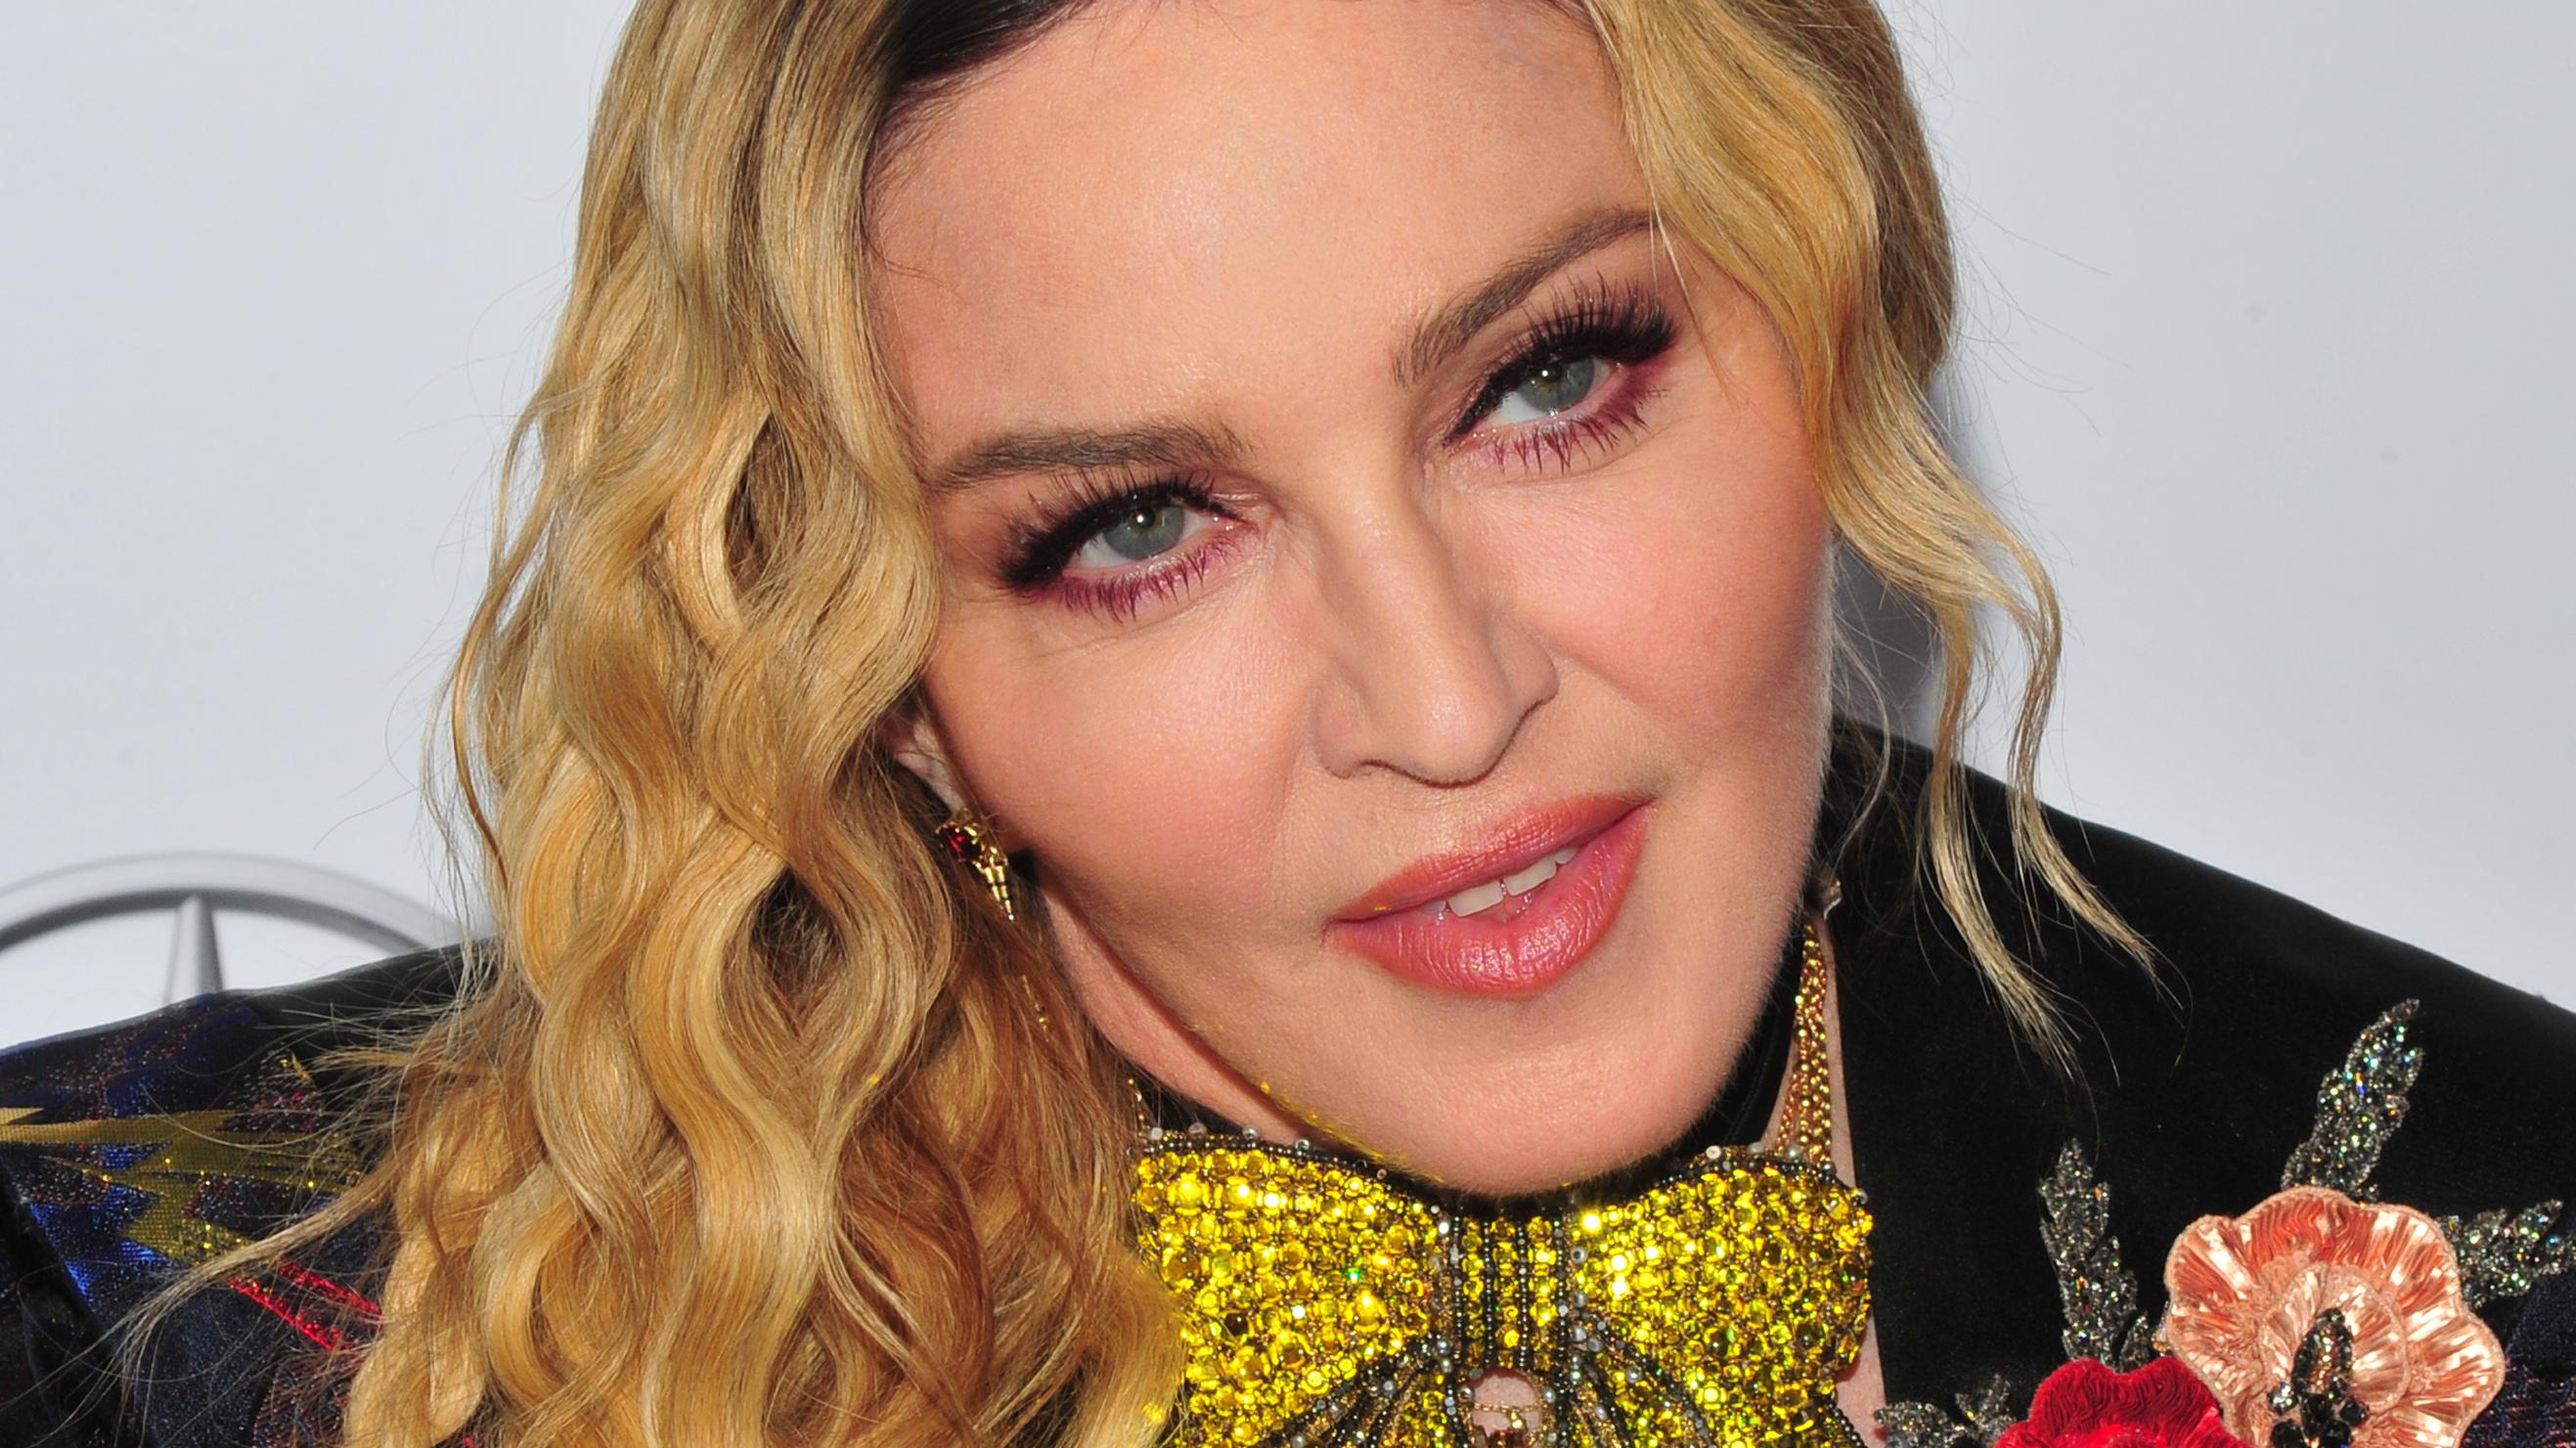 Madonna Na Rozneglizowanym Zdjeciu Piosenkarka Znow Szokuje Na Instagramie Plejada Pl